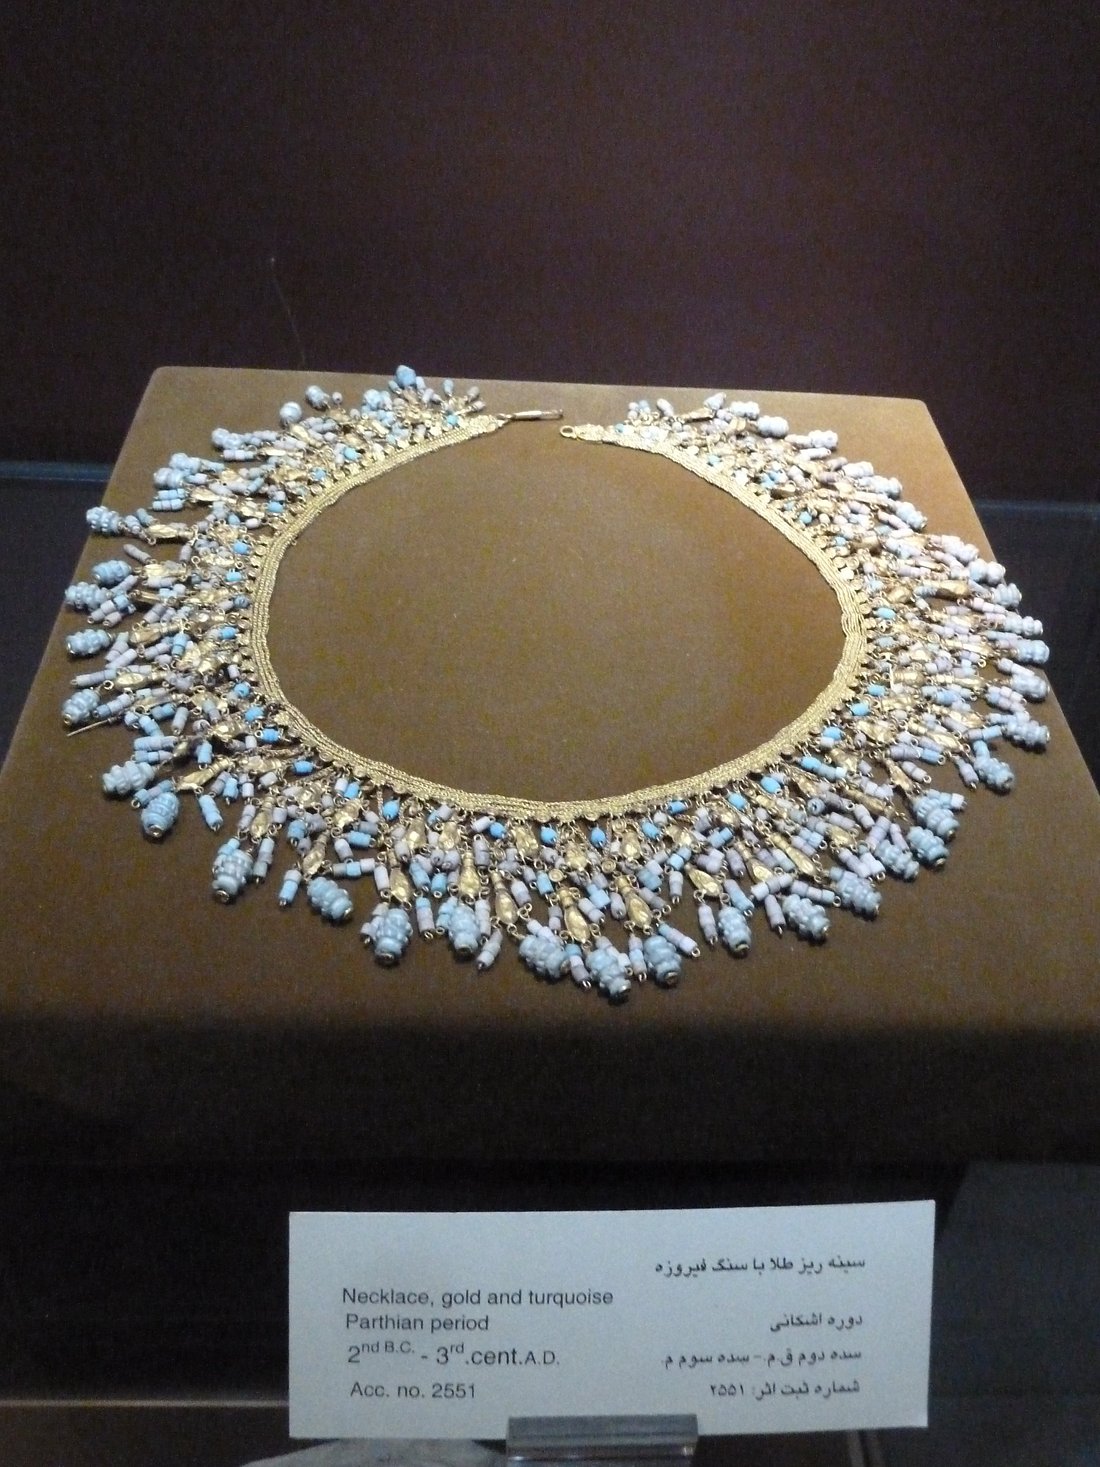 Reza Abbasi Museum, Tehran